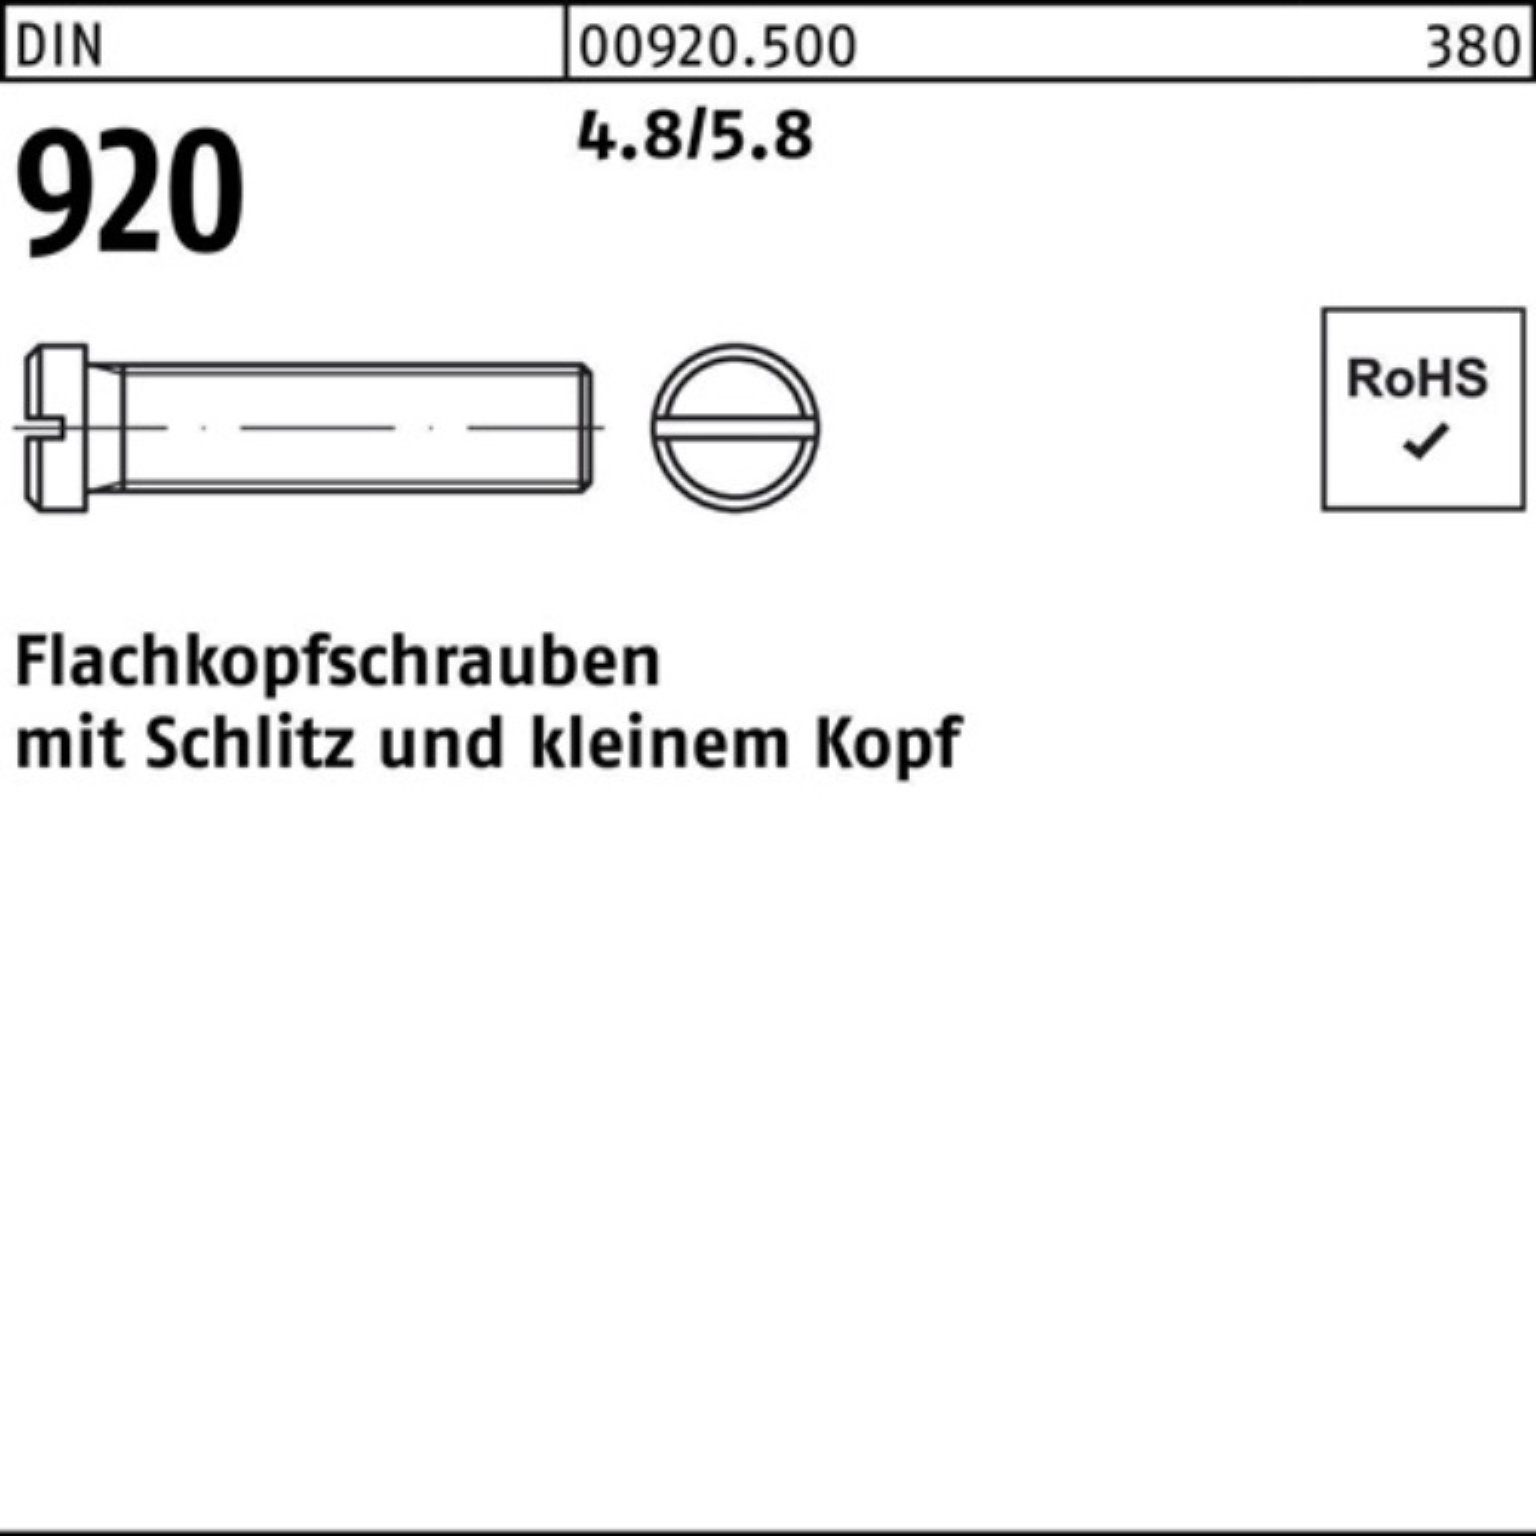 Reyher Schraube 100er Pack Flachkopfschraube DIN 920 Schlitz M3x 5 4.8/5.8 100 Stück